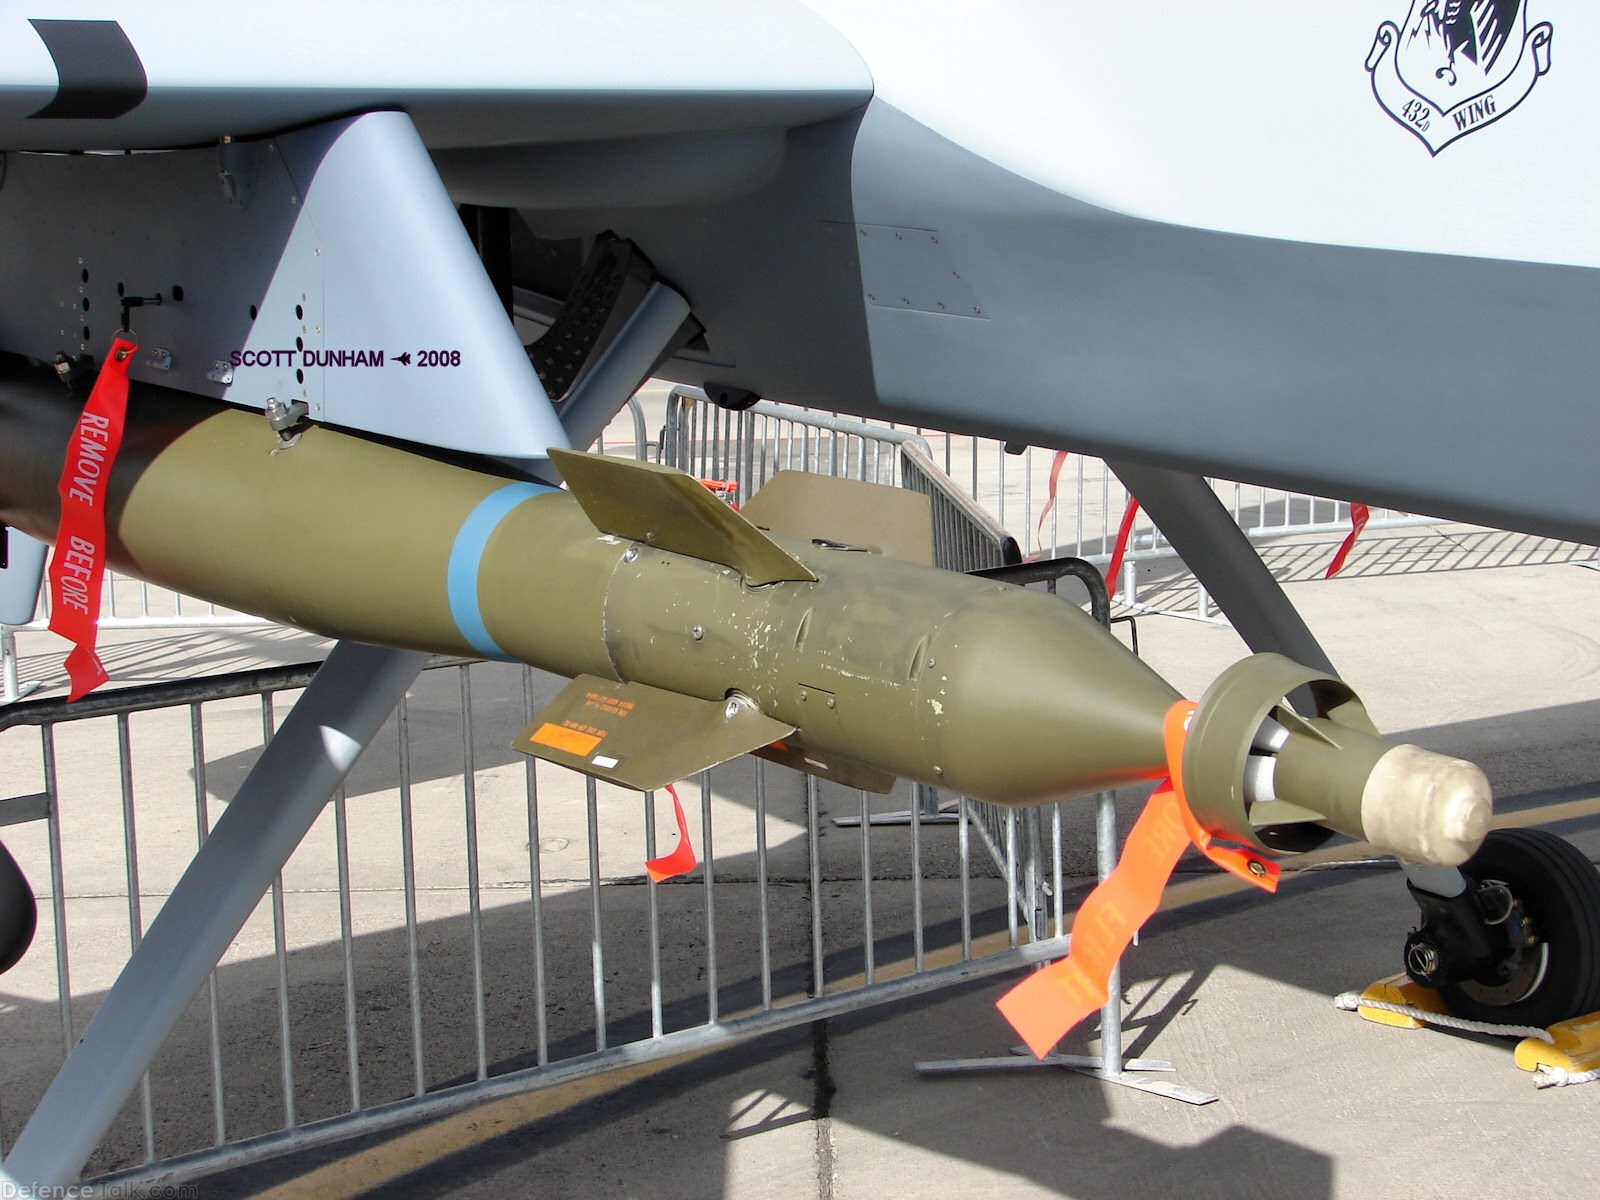 USAF MQ-9 Reaper GBU-12 Paveway Laser Guided Bomb